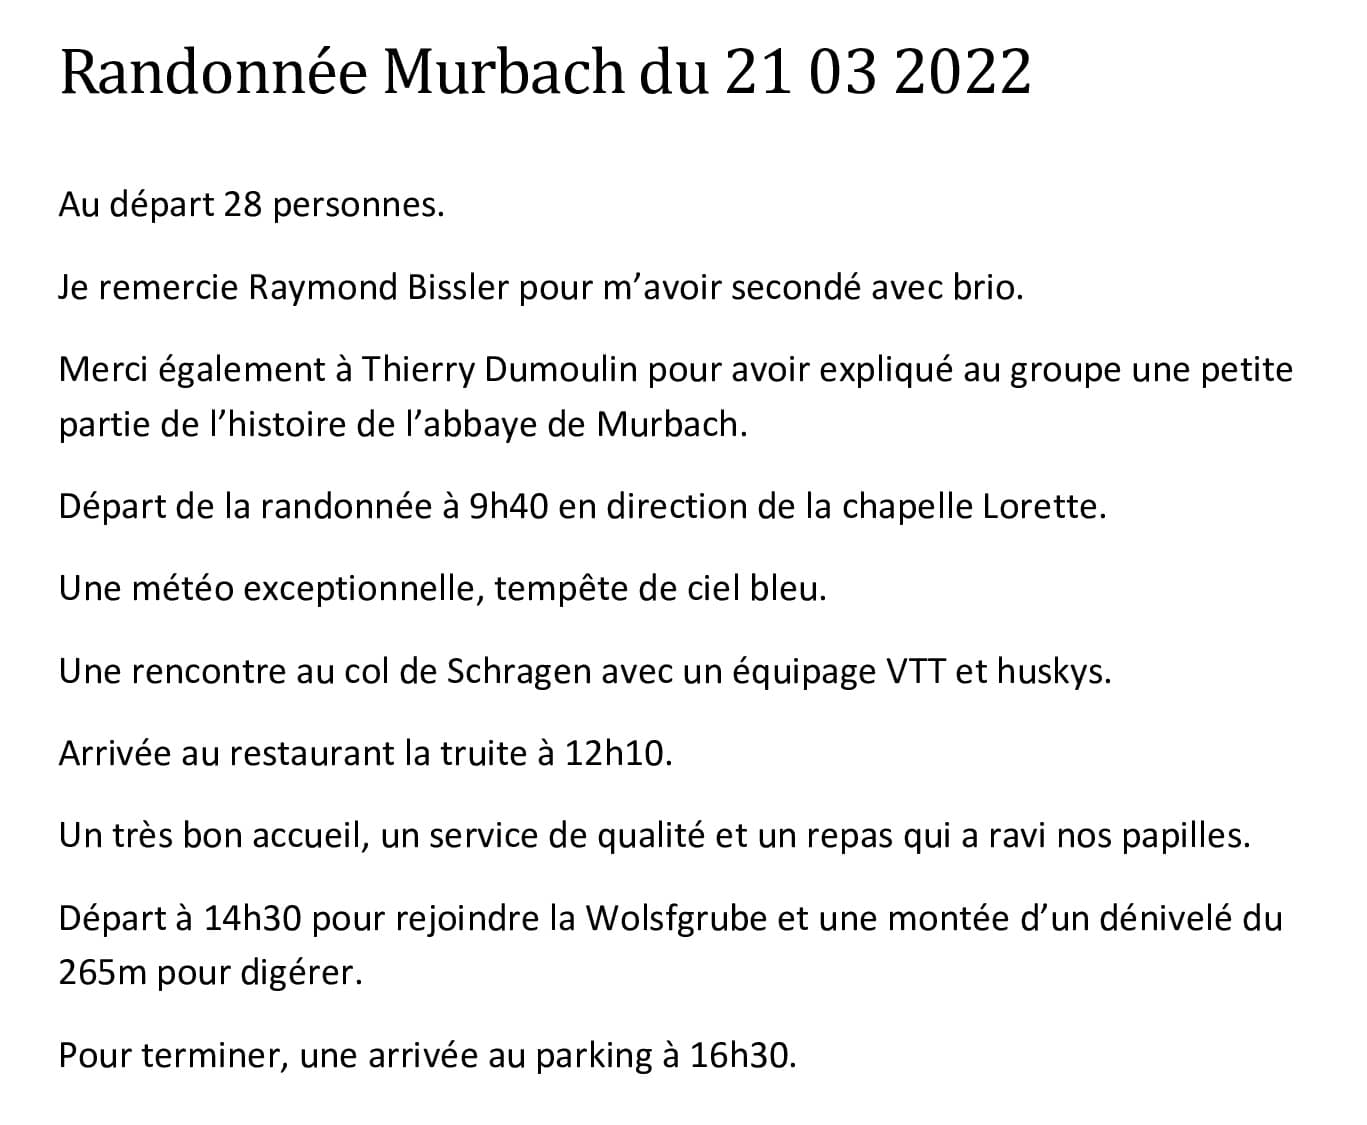 Bilan-de-la-randonnee-Murbach-du-21-03-2022